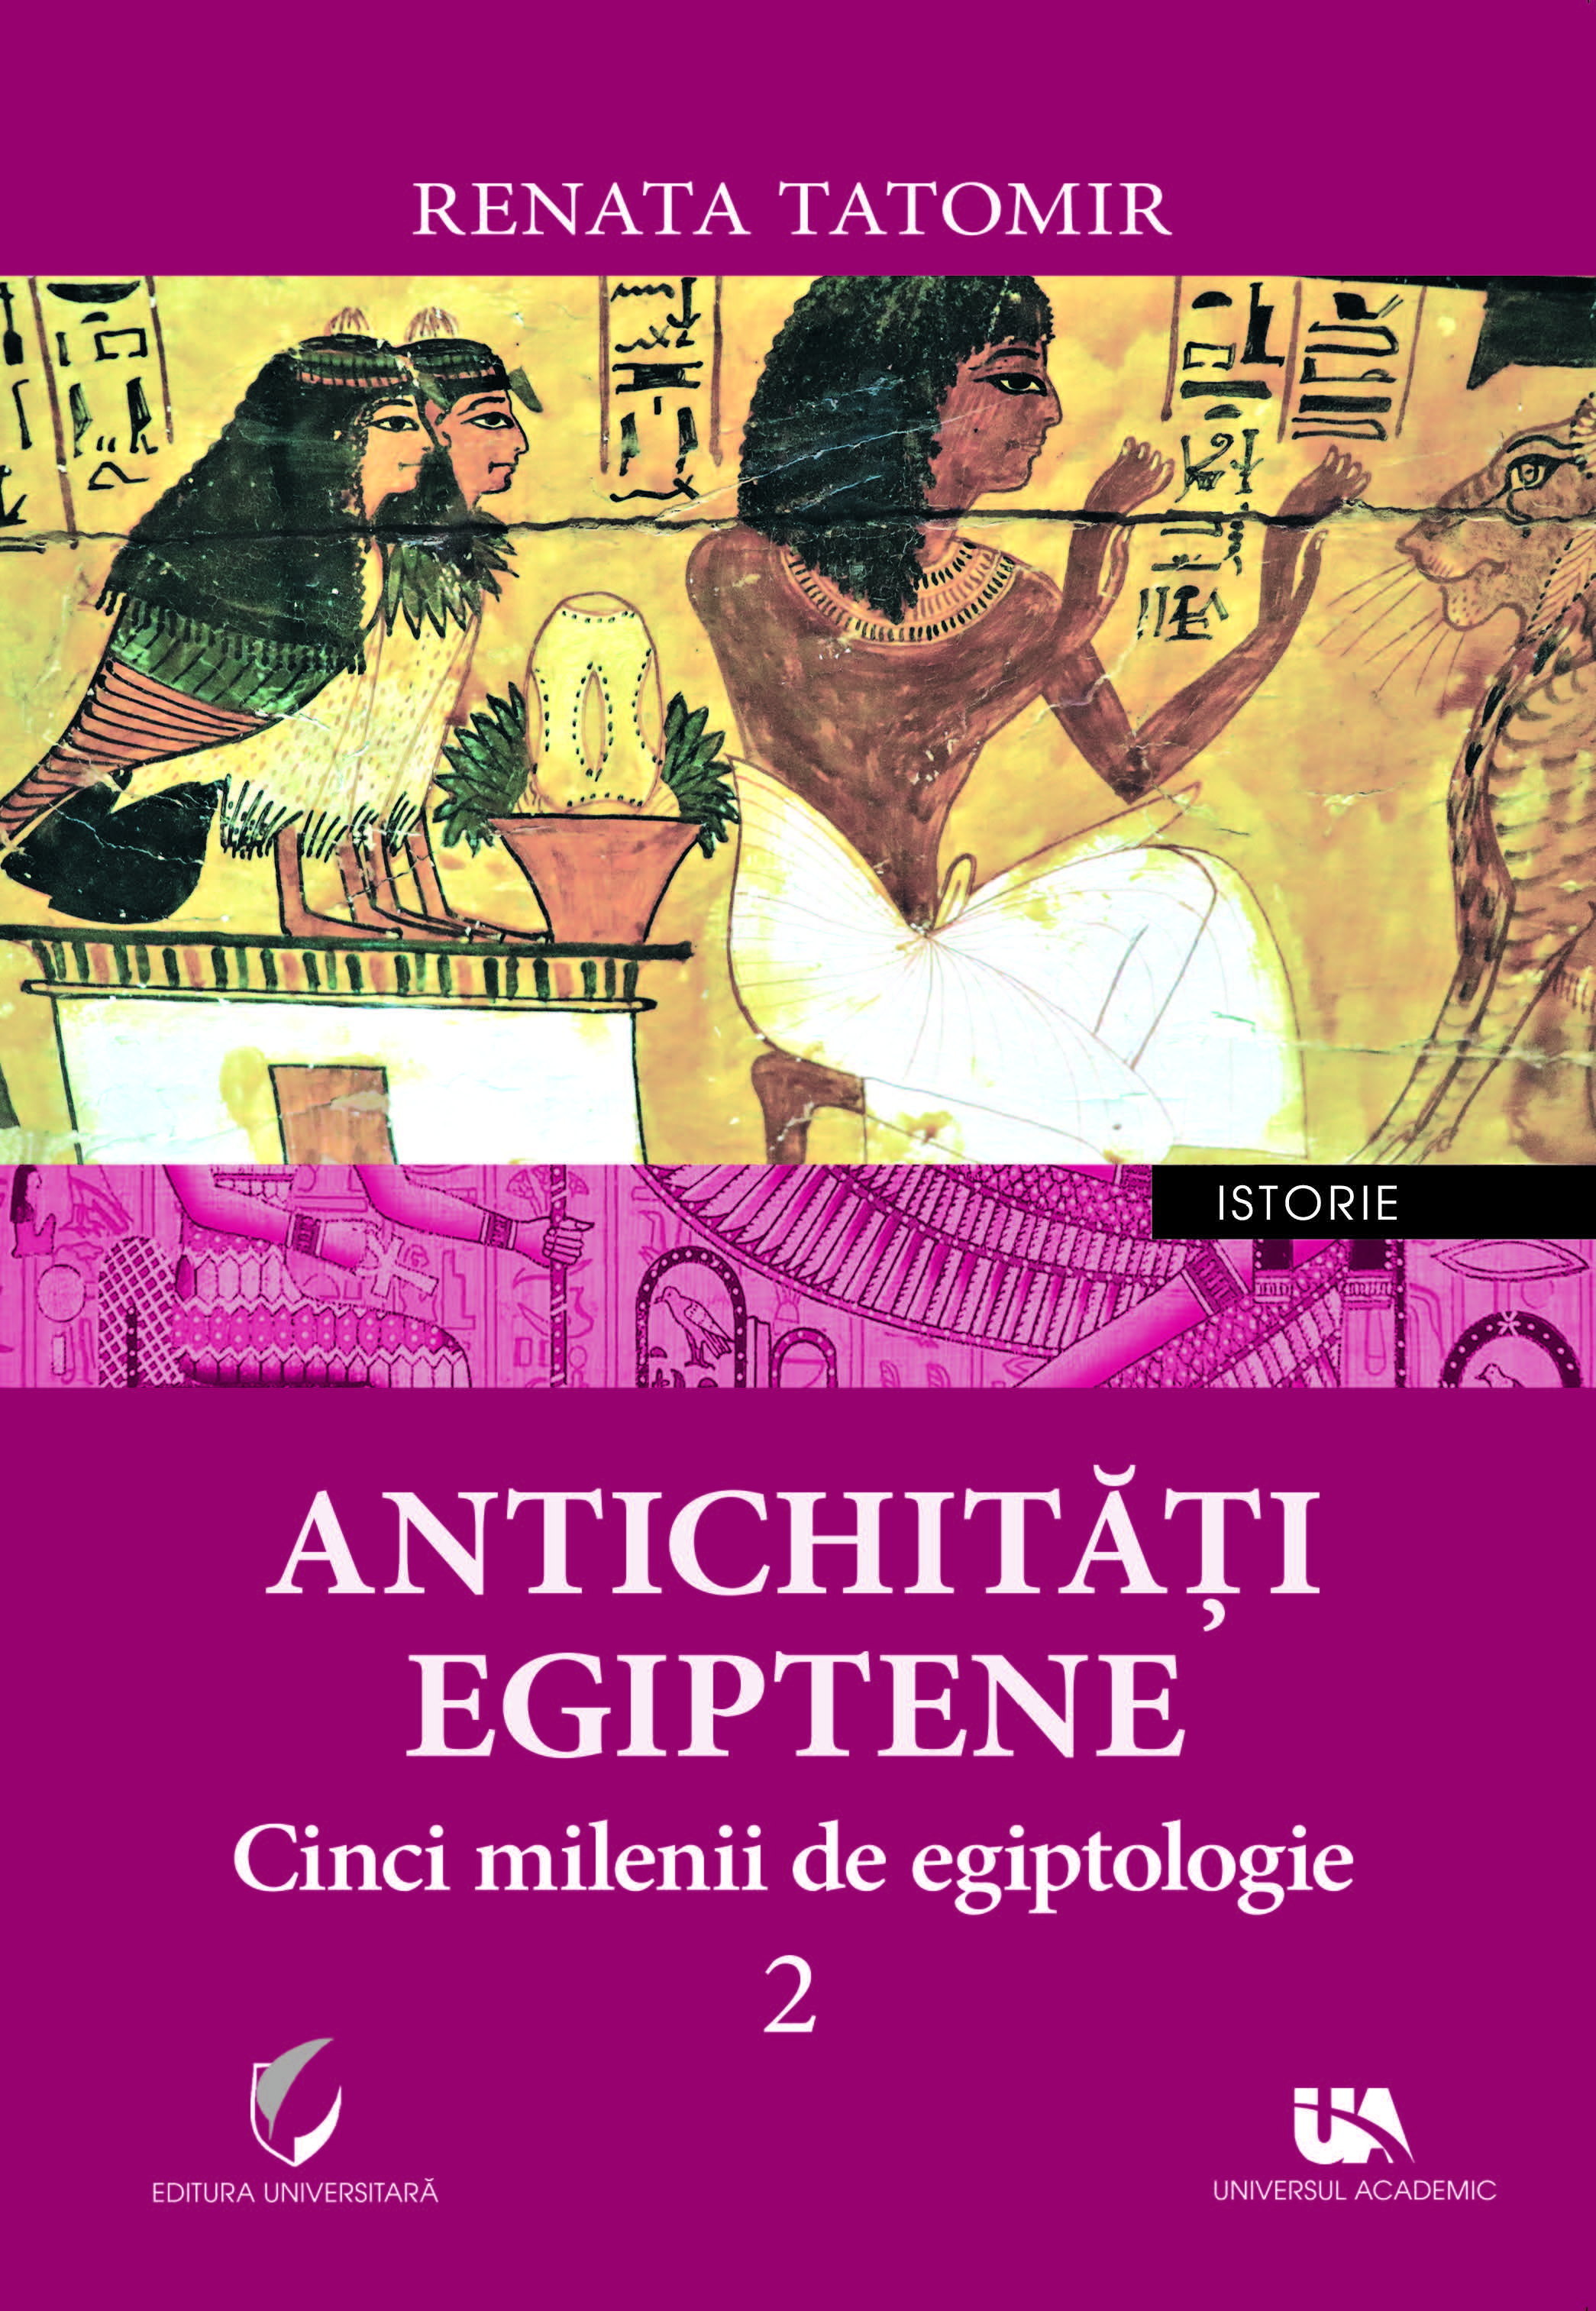 Antichitati egiptene | Renata Tatomir Antichitati